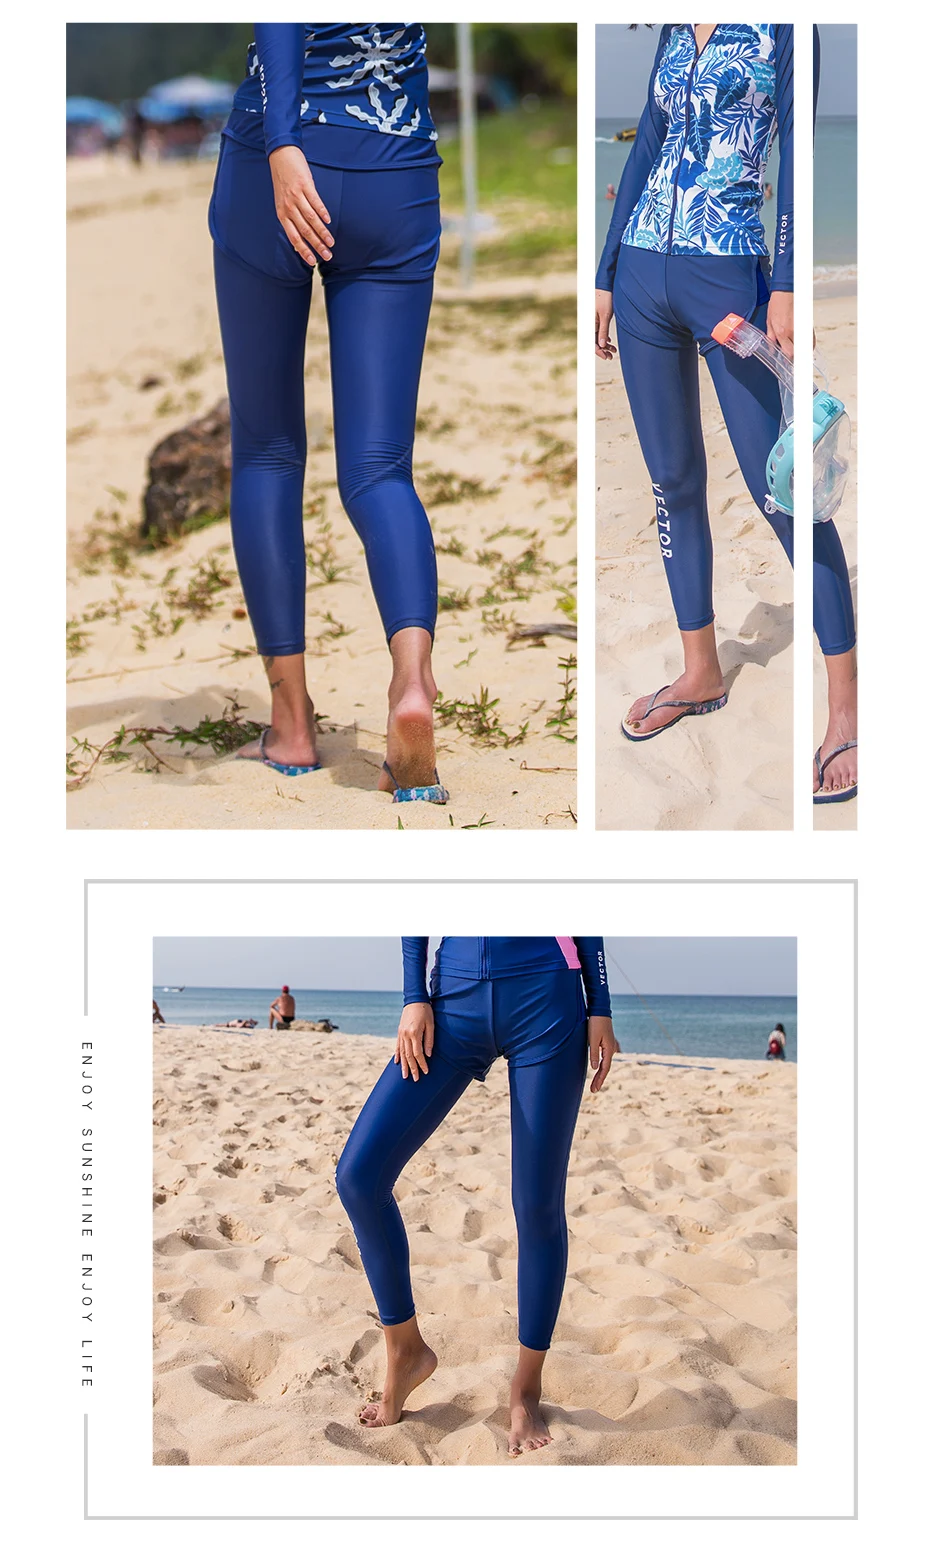 Векторные штаны для дайвинга, облегающие Женские Штаны Для Дайвинга, гидрокостюмы, облегающие брюки для серфинга, подводного плавания, купания, одежда для водных видов спорта